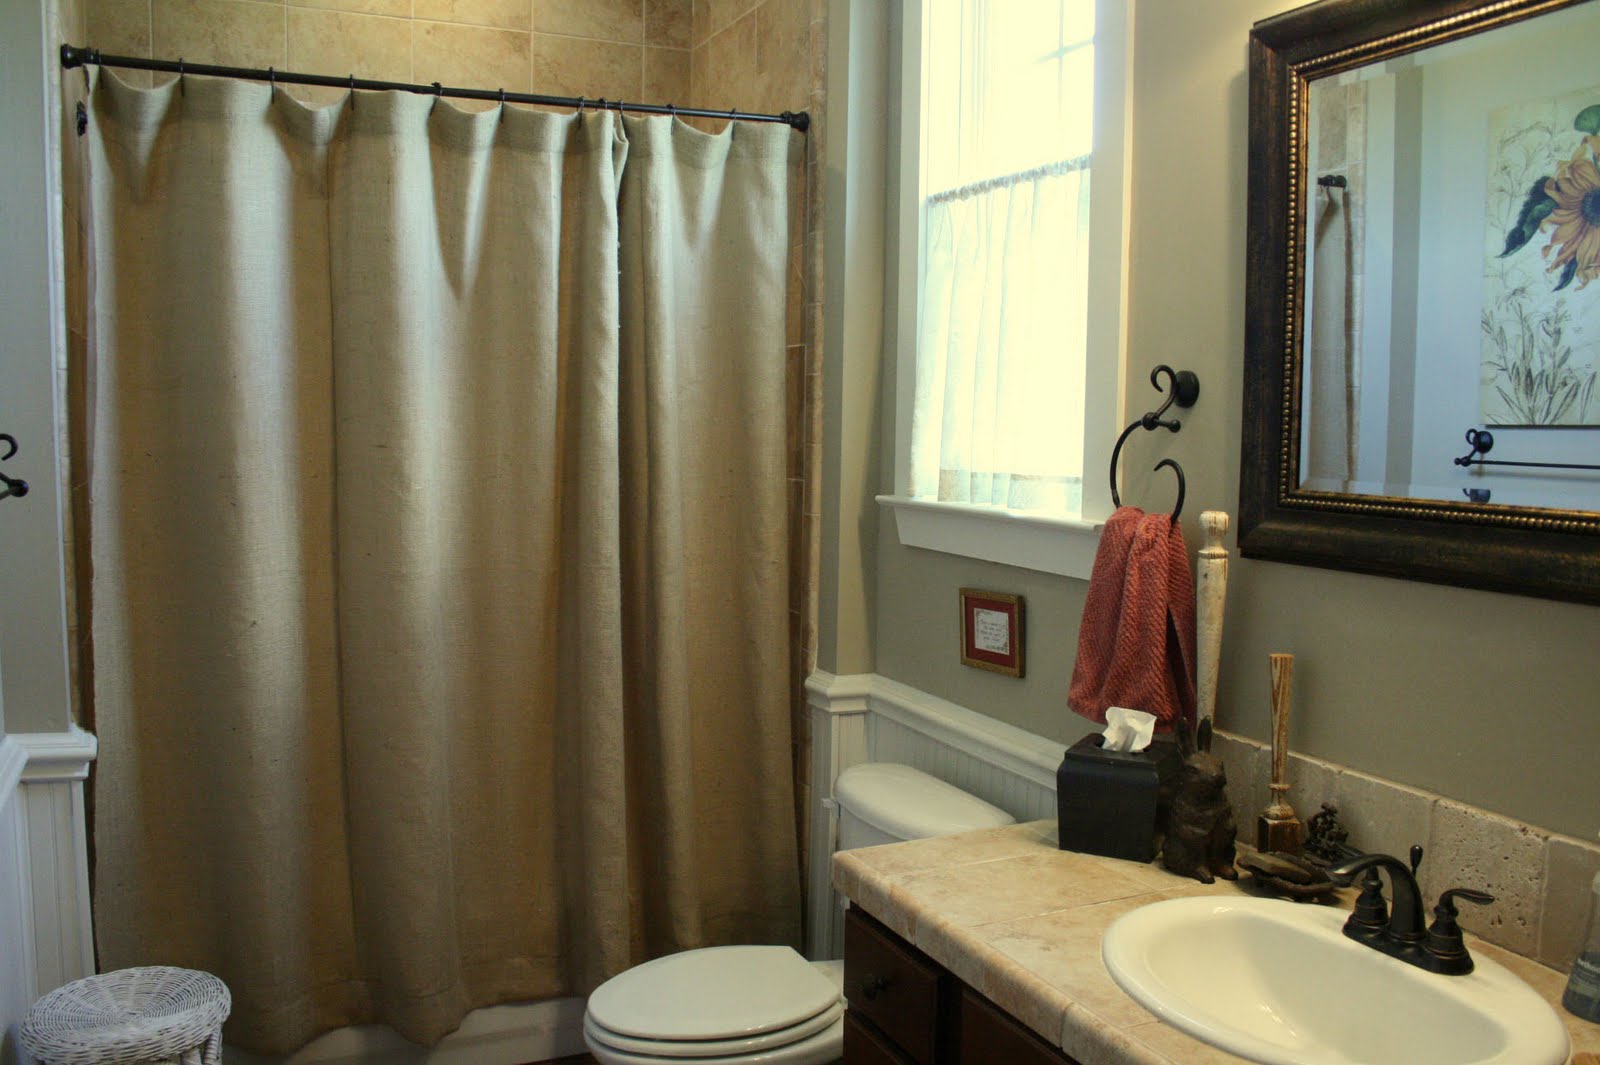 Лучшие шторки для ванны. Штора для ванной комнаты. Ванная комната со шторкой. Ванная с занавеской. Шторы в ванную комнату тканевые.